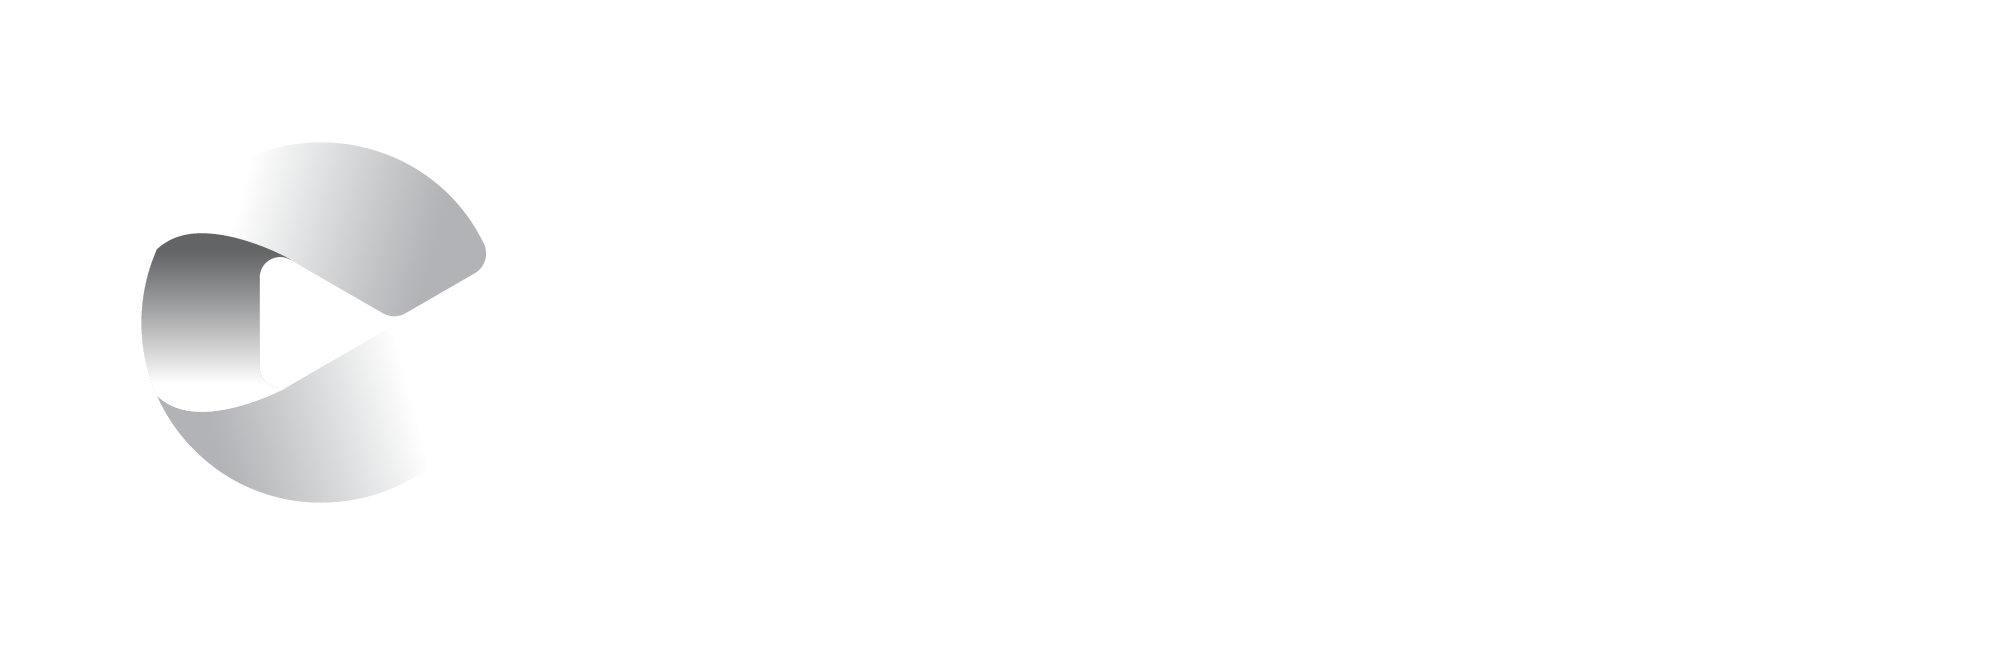 Crowley_logo_gradient_rev_RGB